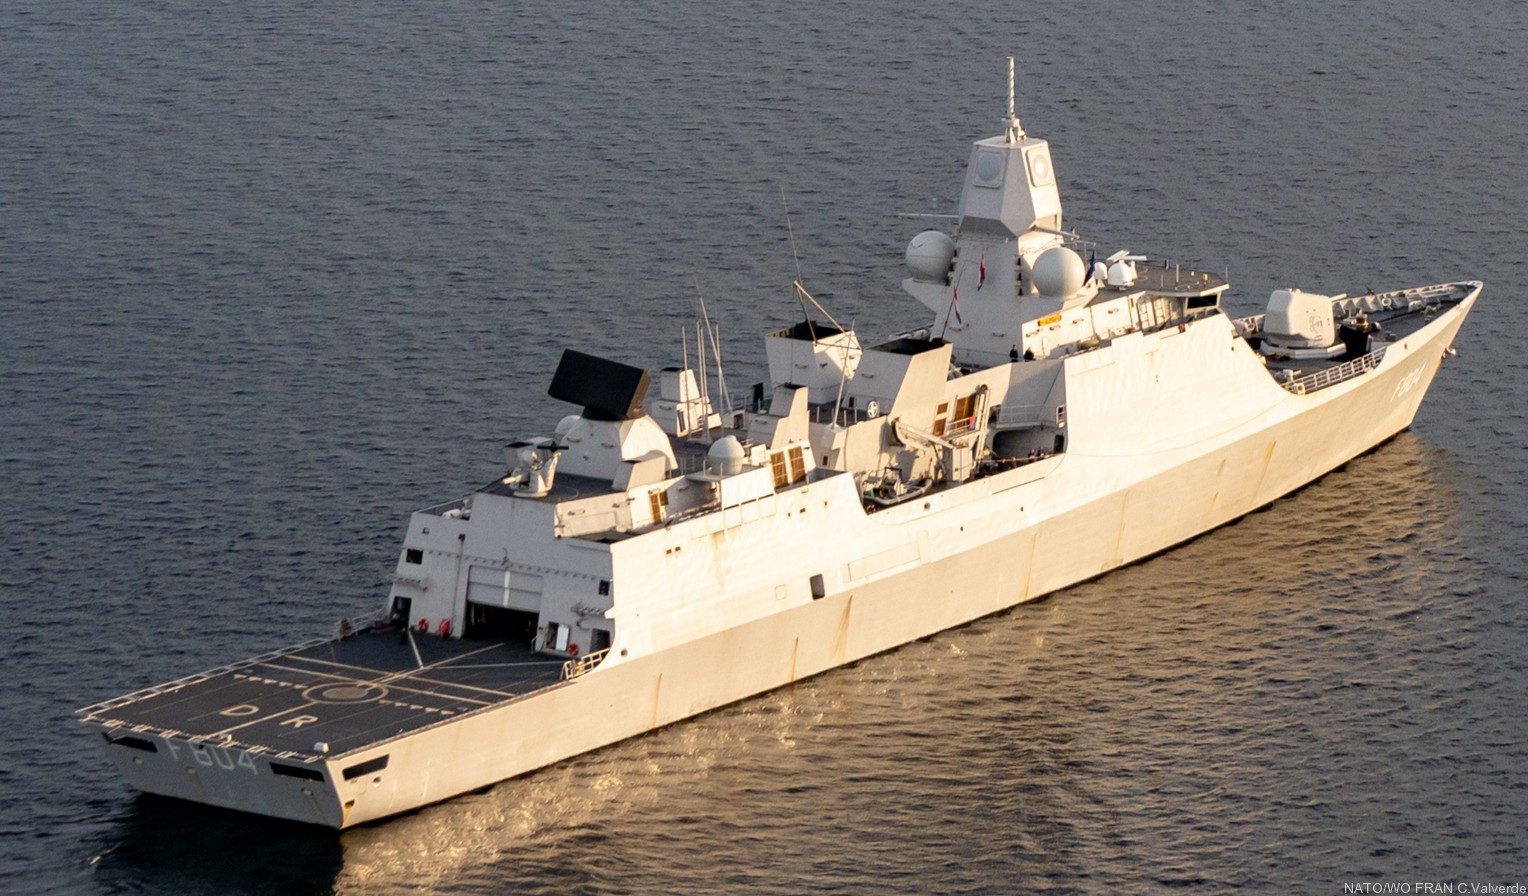 f-804 hnlms de ruyter guided missile frigate ffg lcf royal netherlands navy 14 koninklijke marine